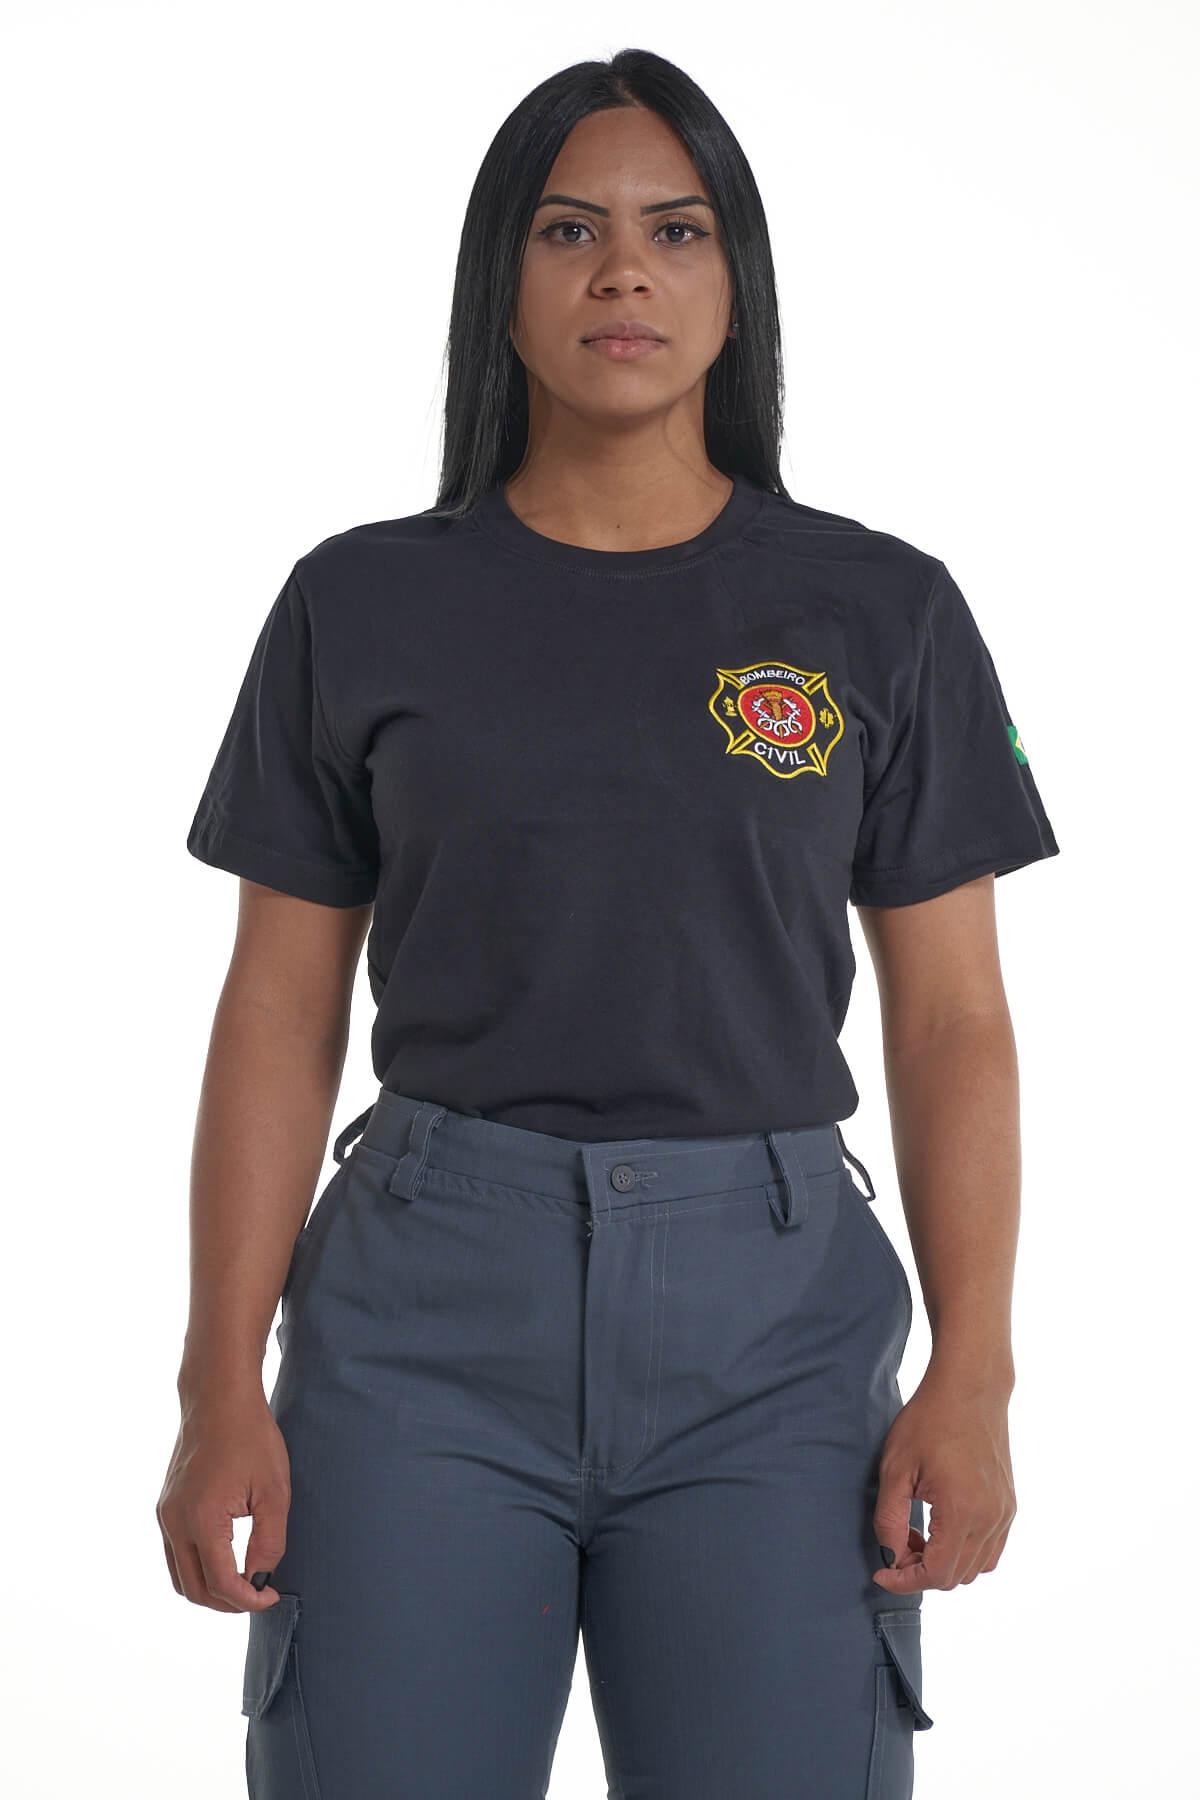 Design de camiseta de bombeiro lendário